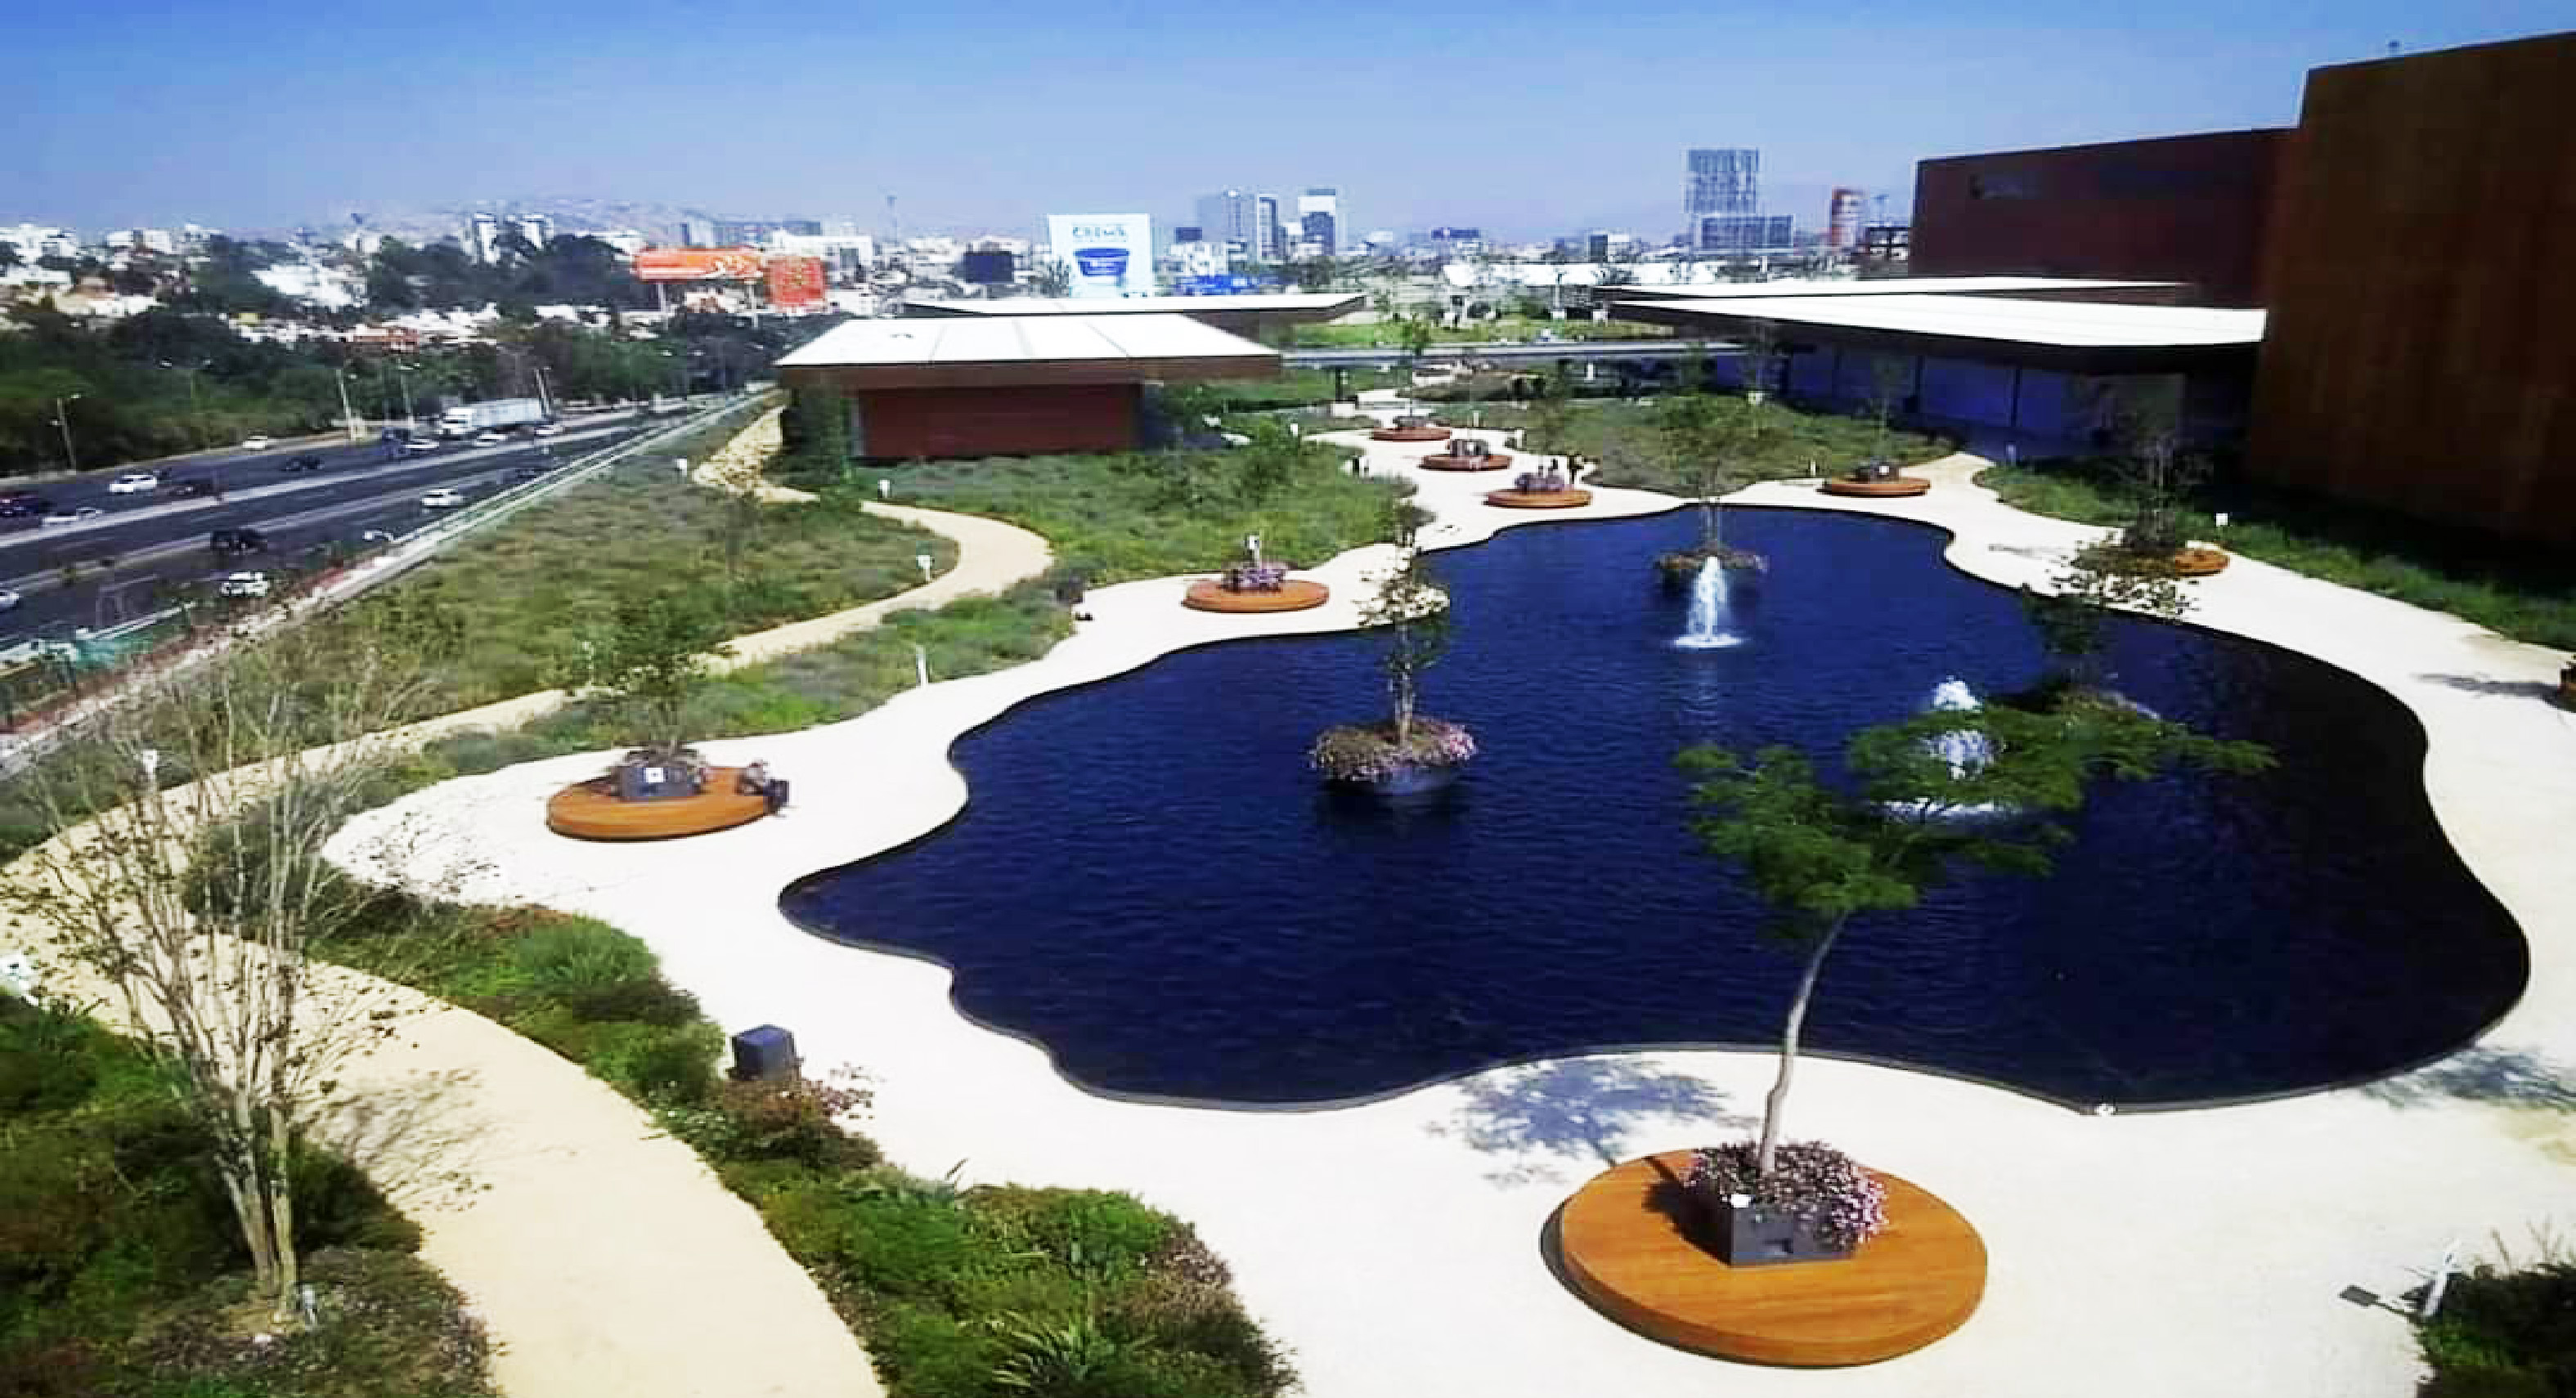 Nuevo centro comercial mexiquense con el parque más grande del mundo en su azotea || VIDEO